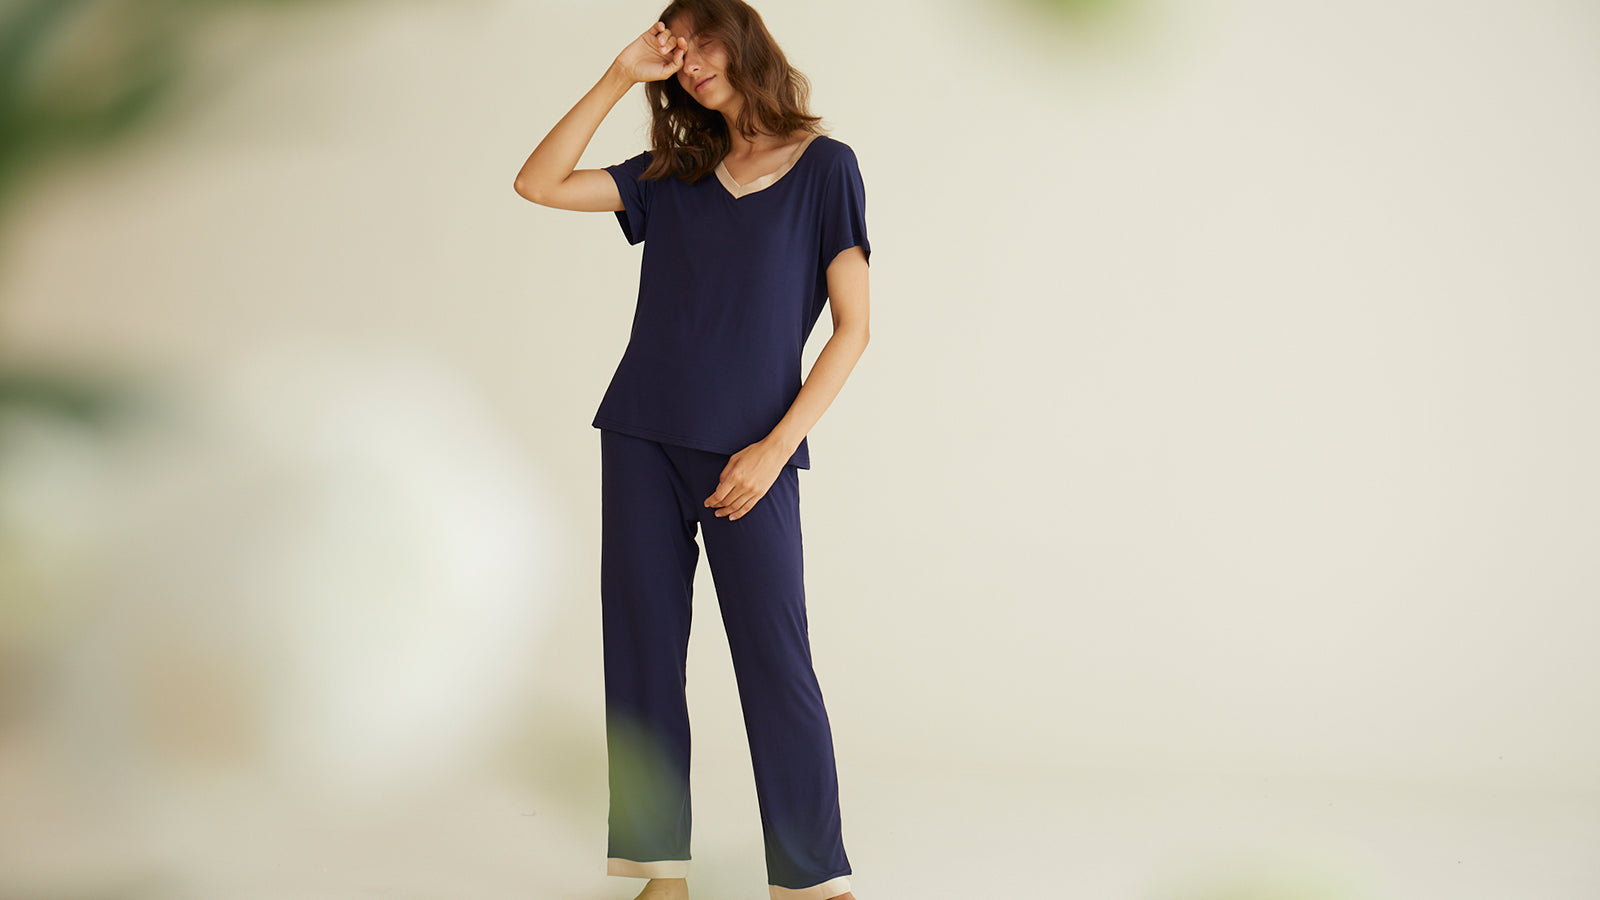 Women's Petite Soft Viscose Pajama Pants with Pockets – Latuza